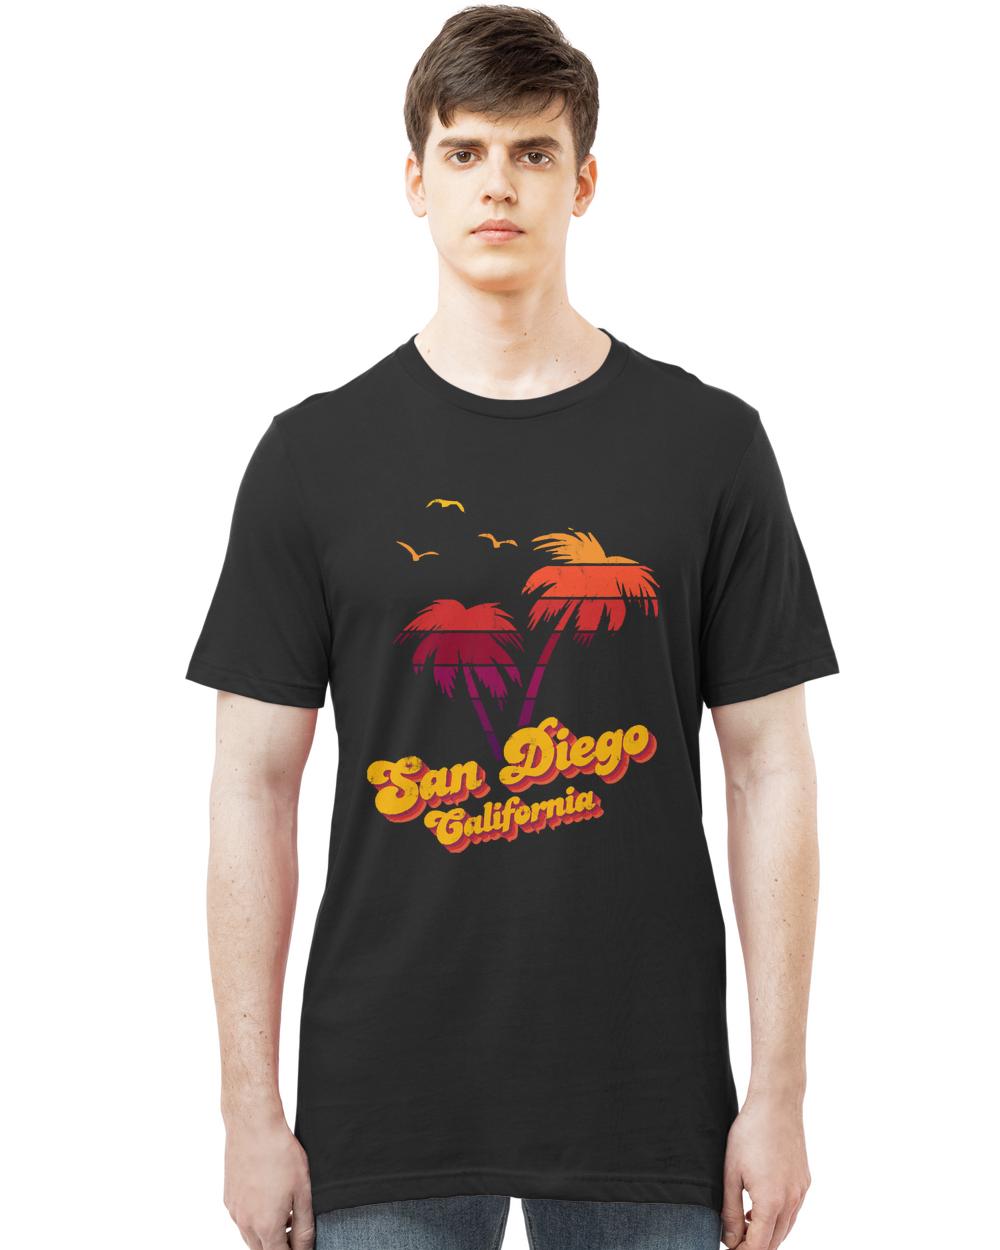 San Diego T- Shirt San Diego California T- Shirt (1)